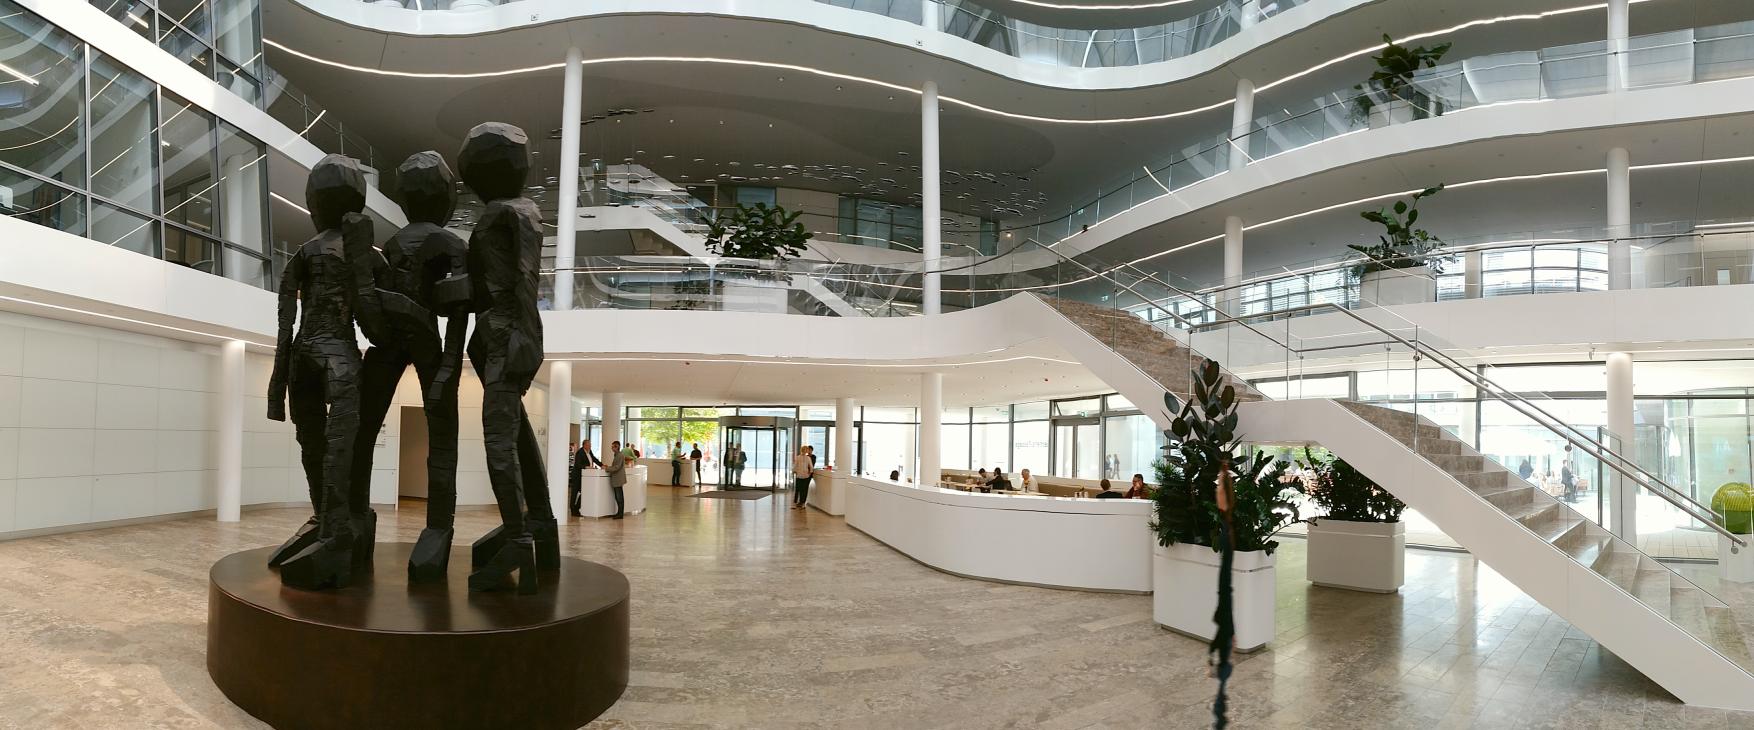 Foyer der SIEMENS-Konzernzentrale München